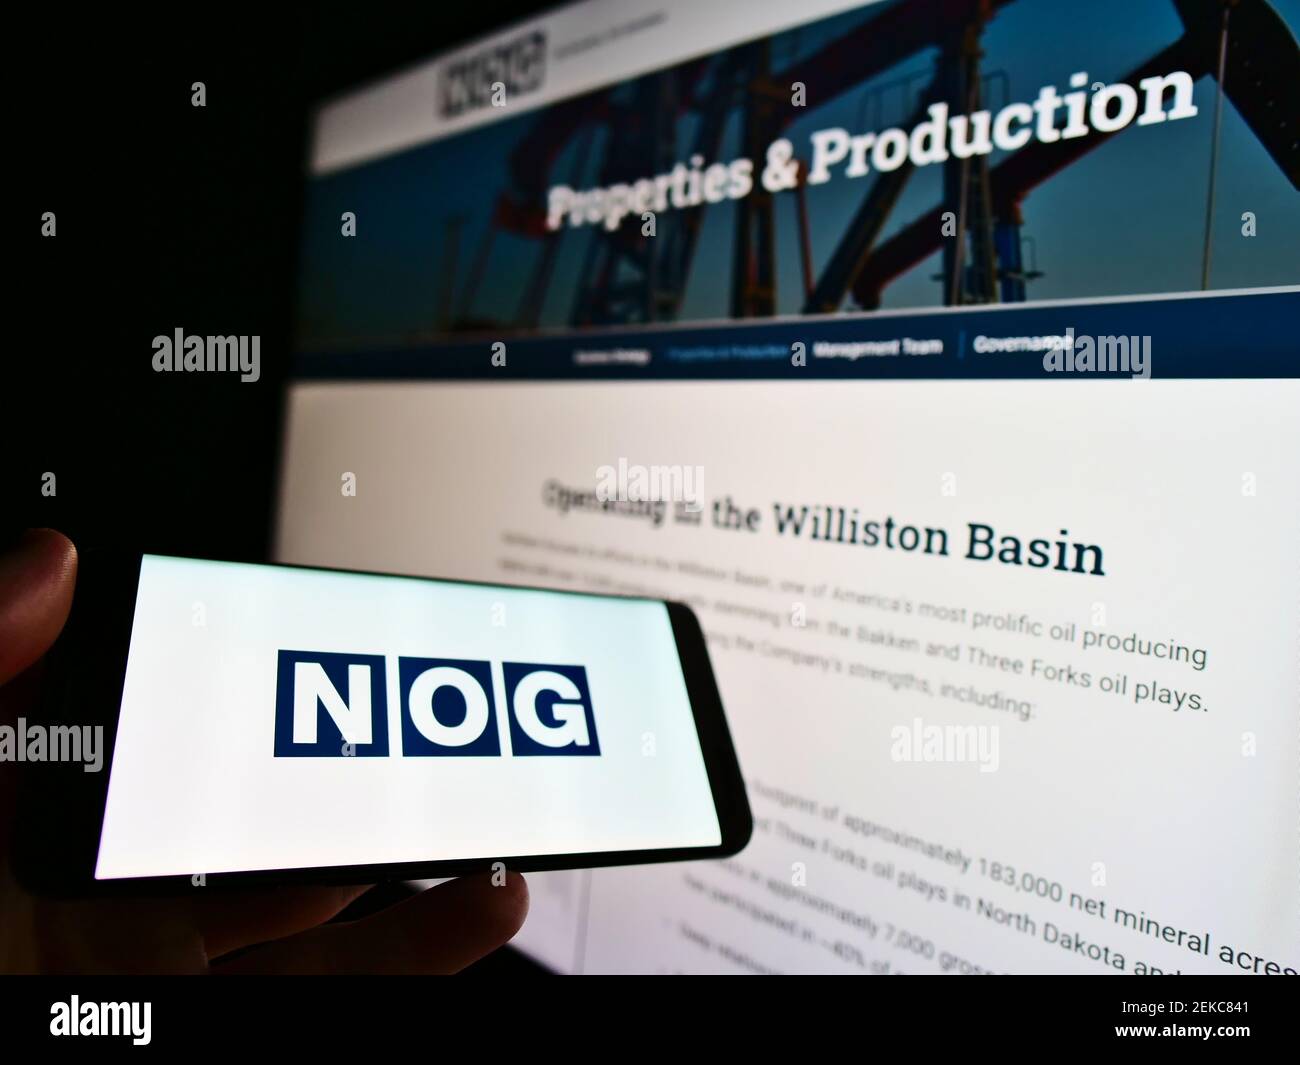 Personne tenant un téléphone portable avec le logo de la société américaine d'énergie Northern Oil and Gas (NOG) sur l'écran devant le site Web d'affaires. Mise au point sur l'affichage du téléphone. Banque D'Images